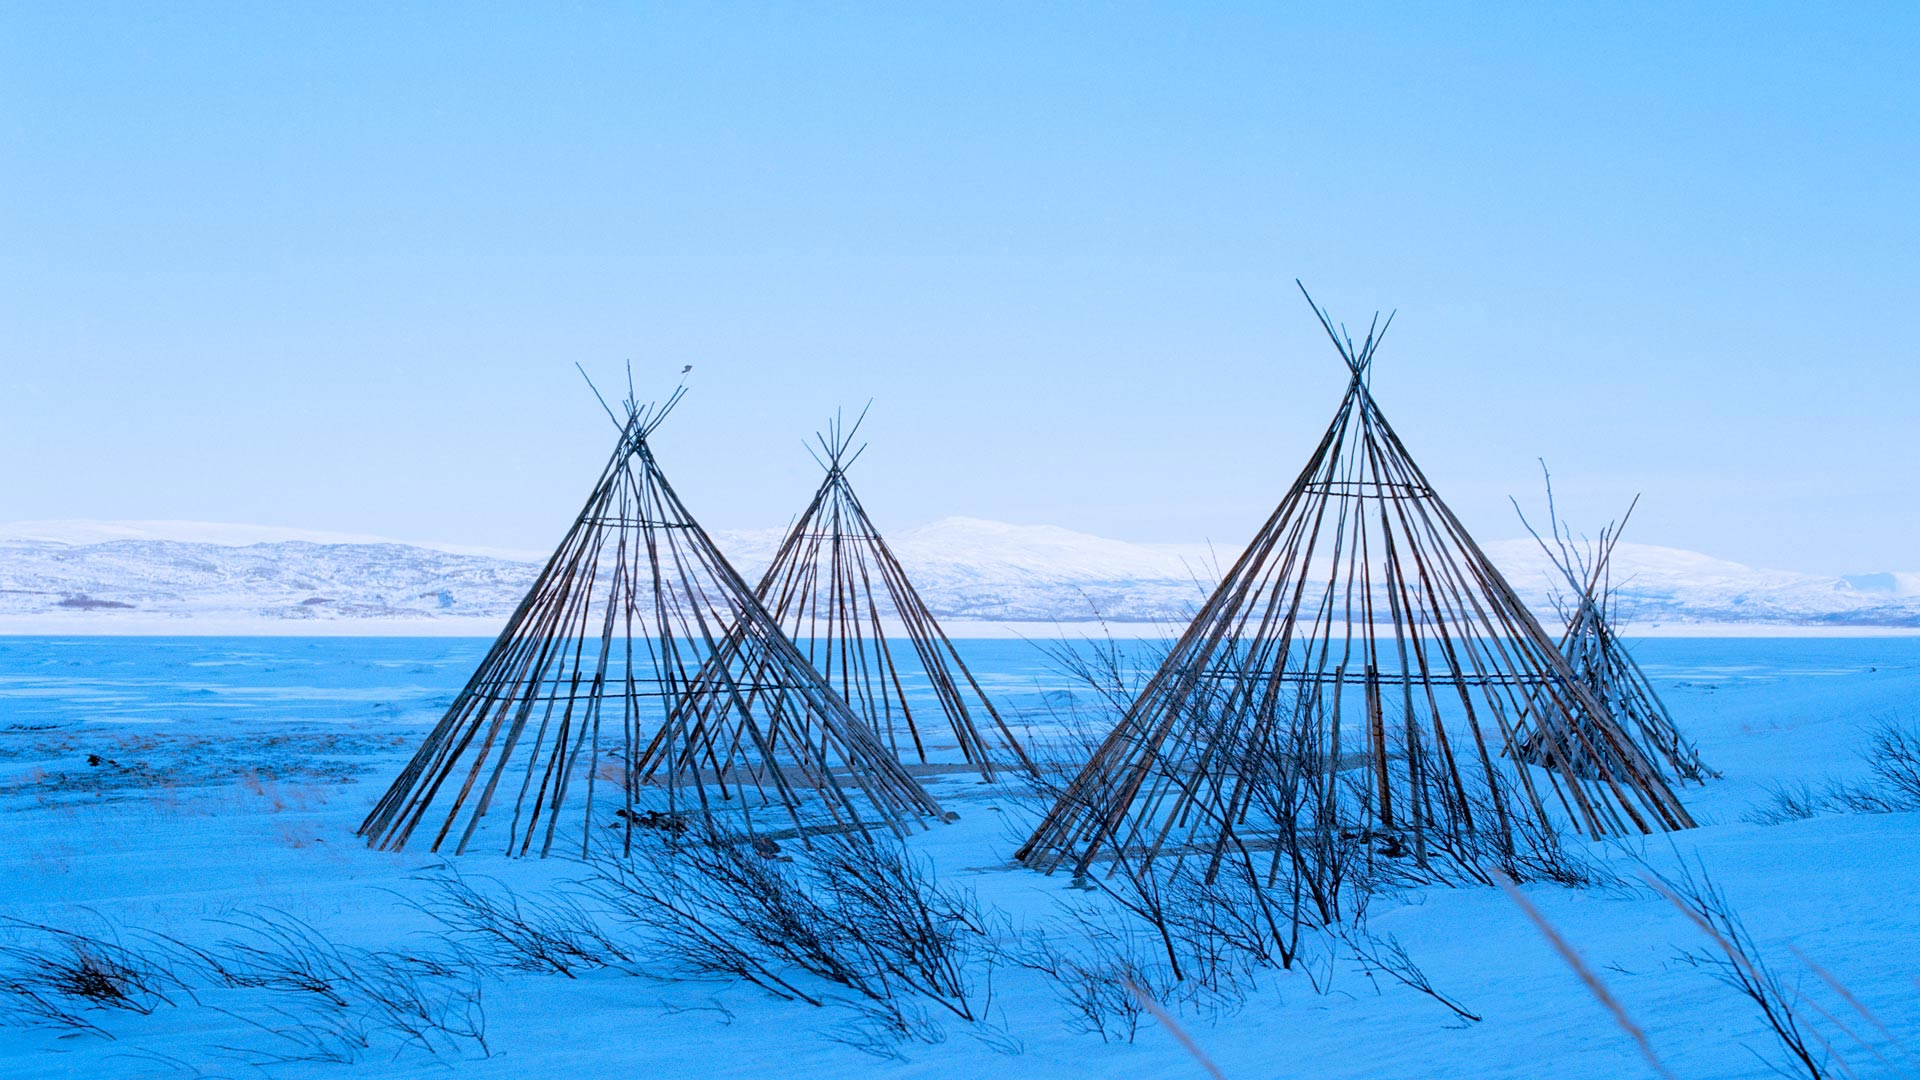 Sami lavvu structures, Finnmark, Norway